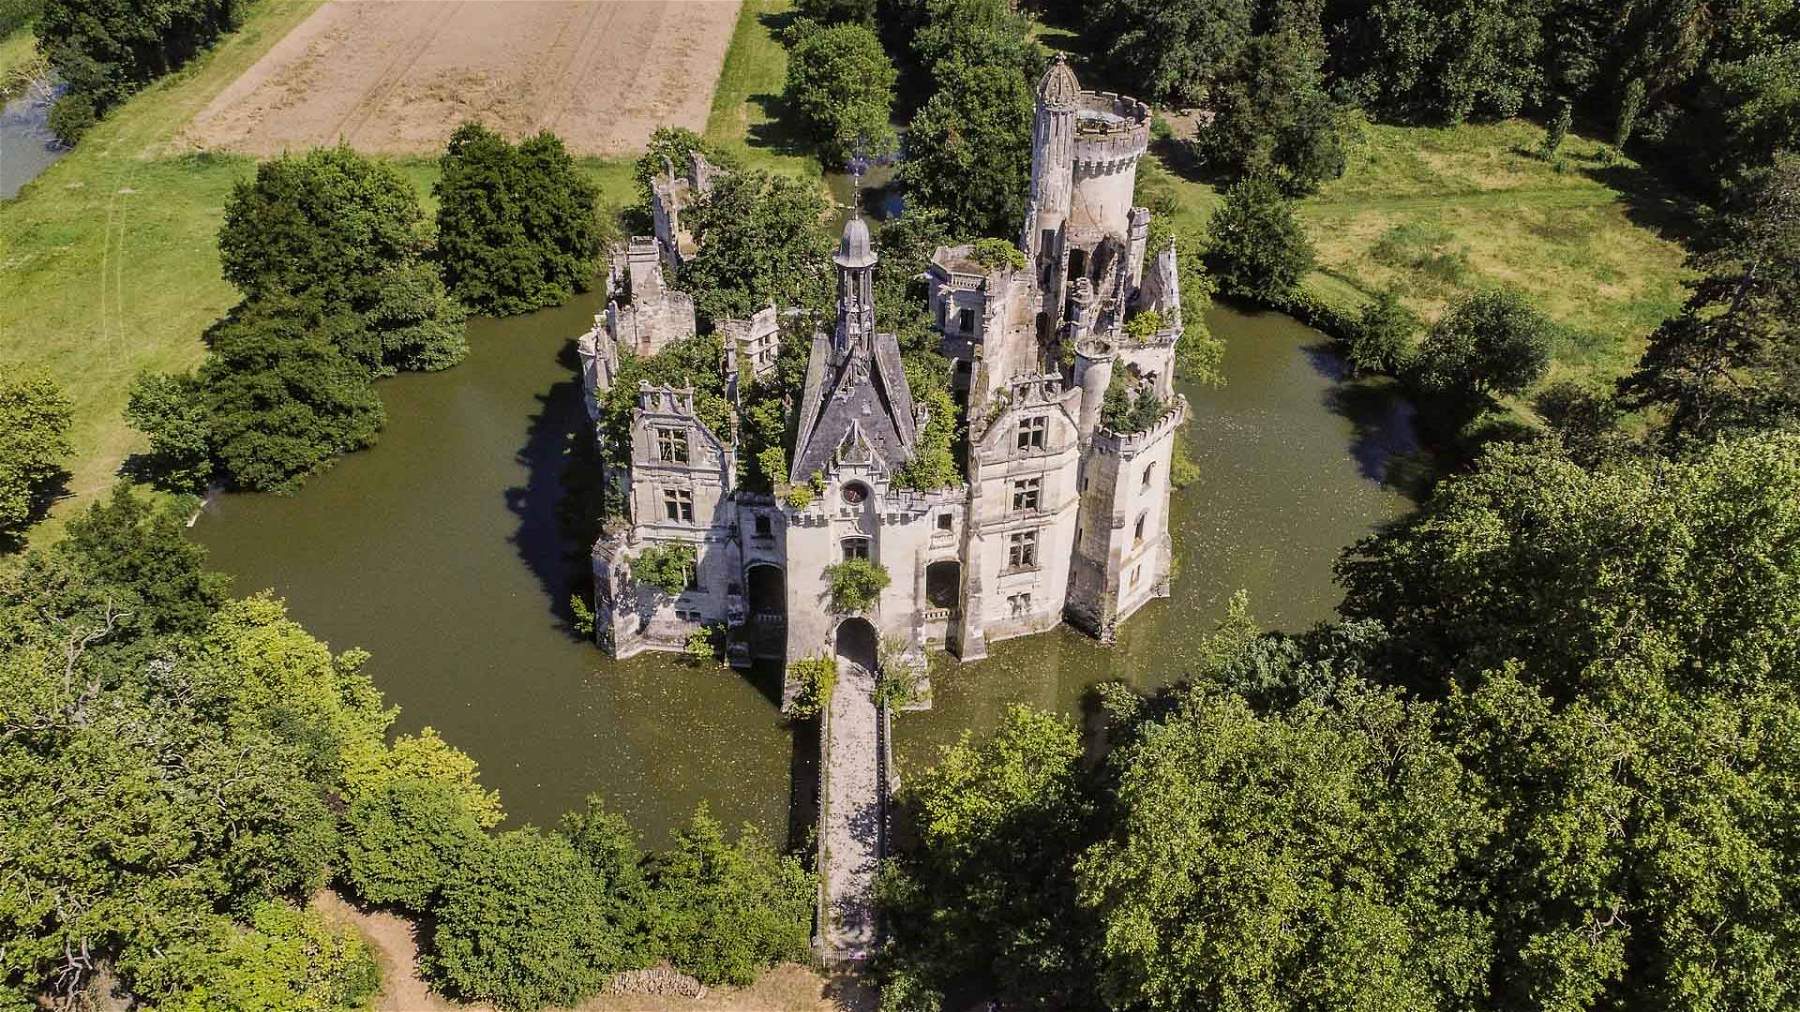 France, l'un des plus beaux châteaux de la Loire reconquis grâce à un actionnariat populaire